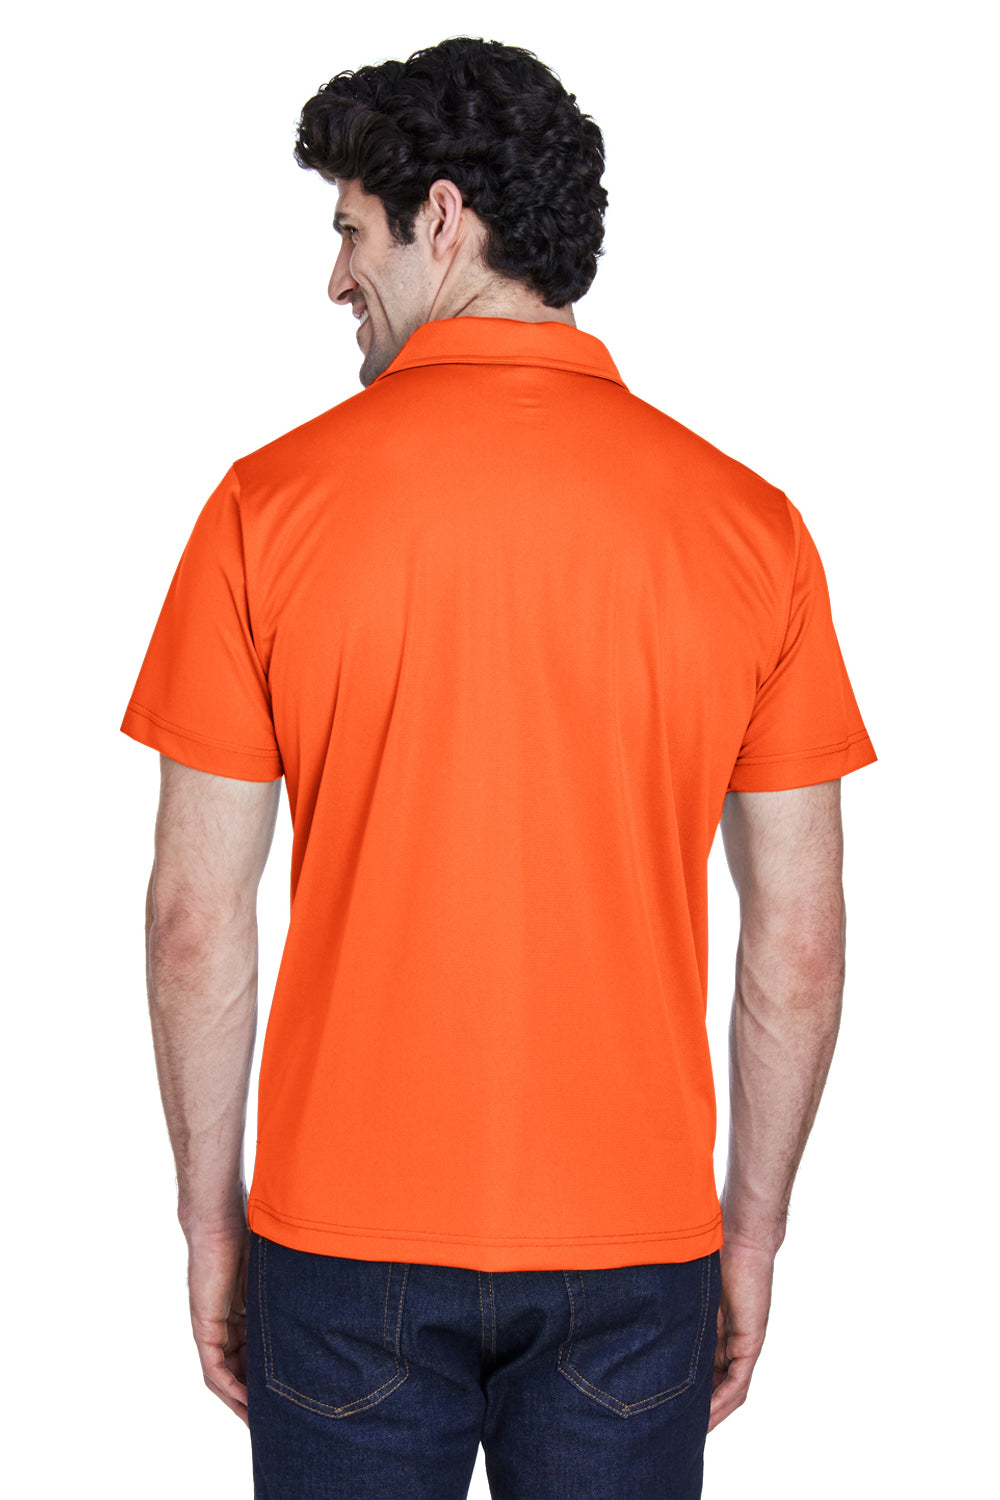 Team 365 TT21 Mens Command Performance Moisture Wicking Short Sleeve Polo Shirt Orange Back